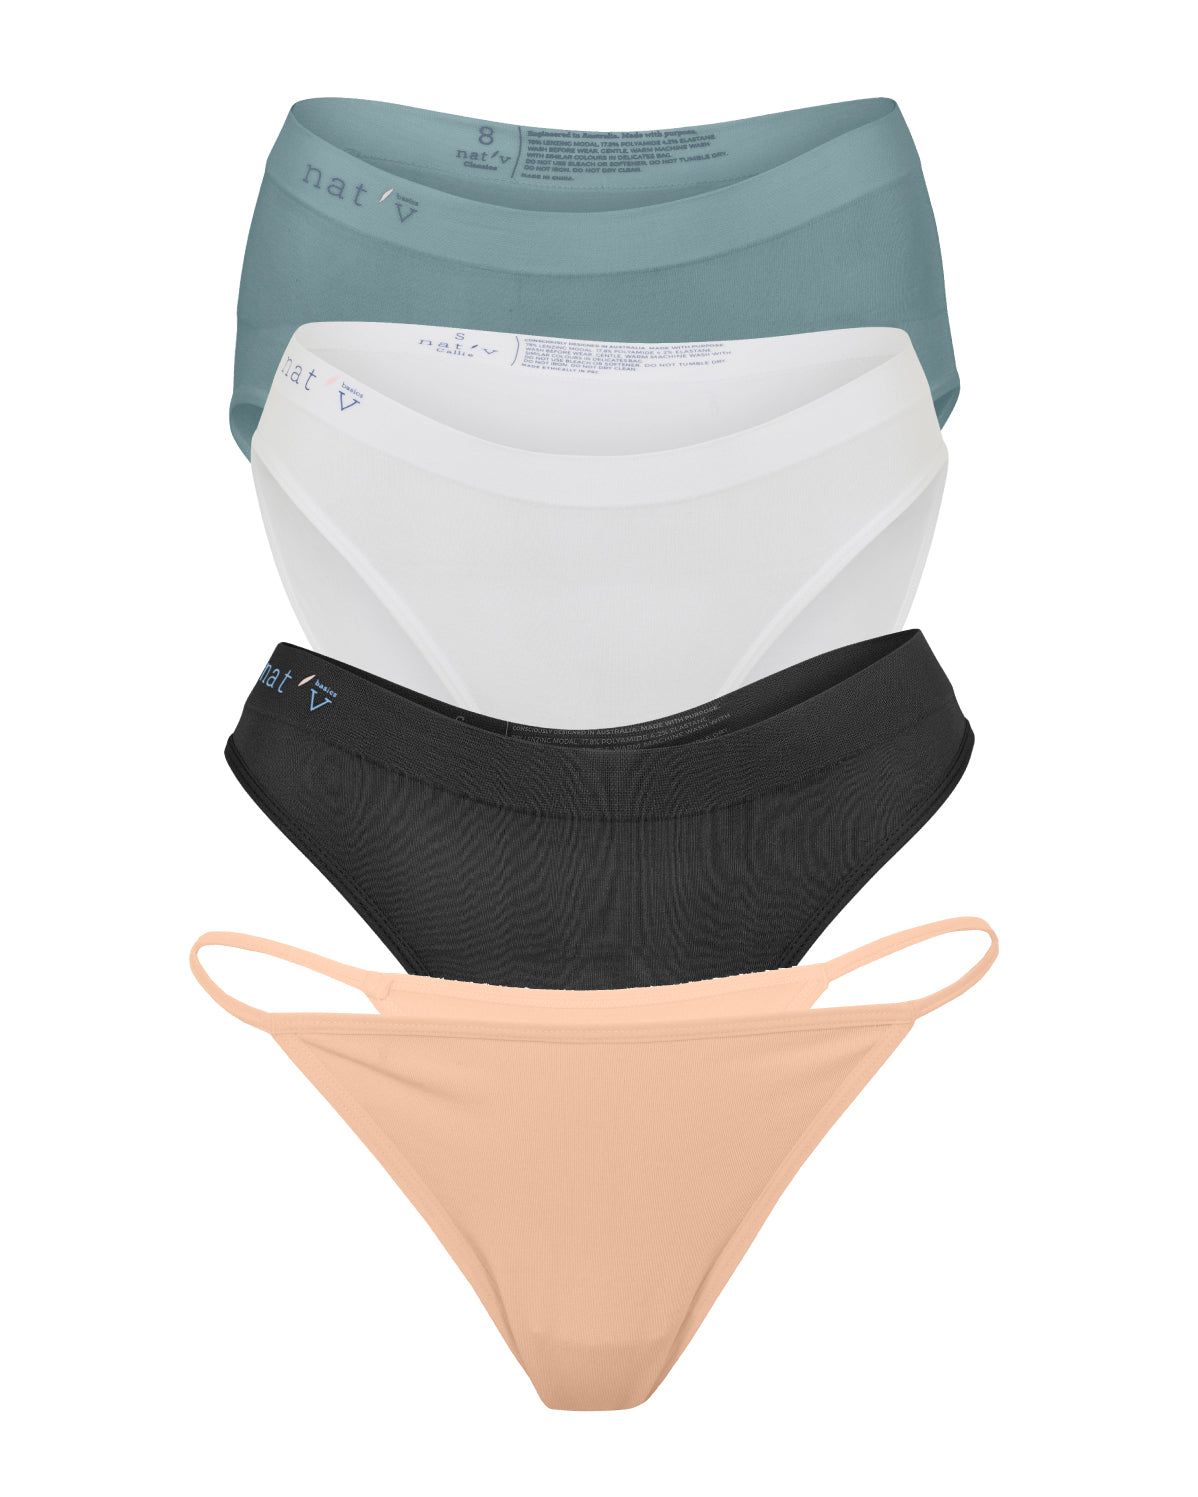 Nat'v Basics, Women's Underwear